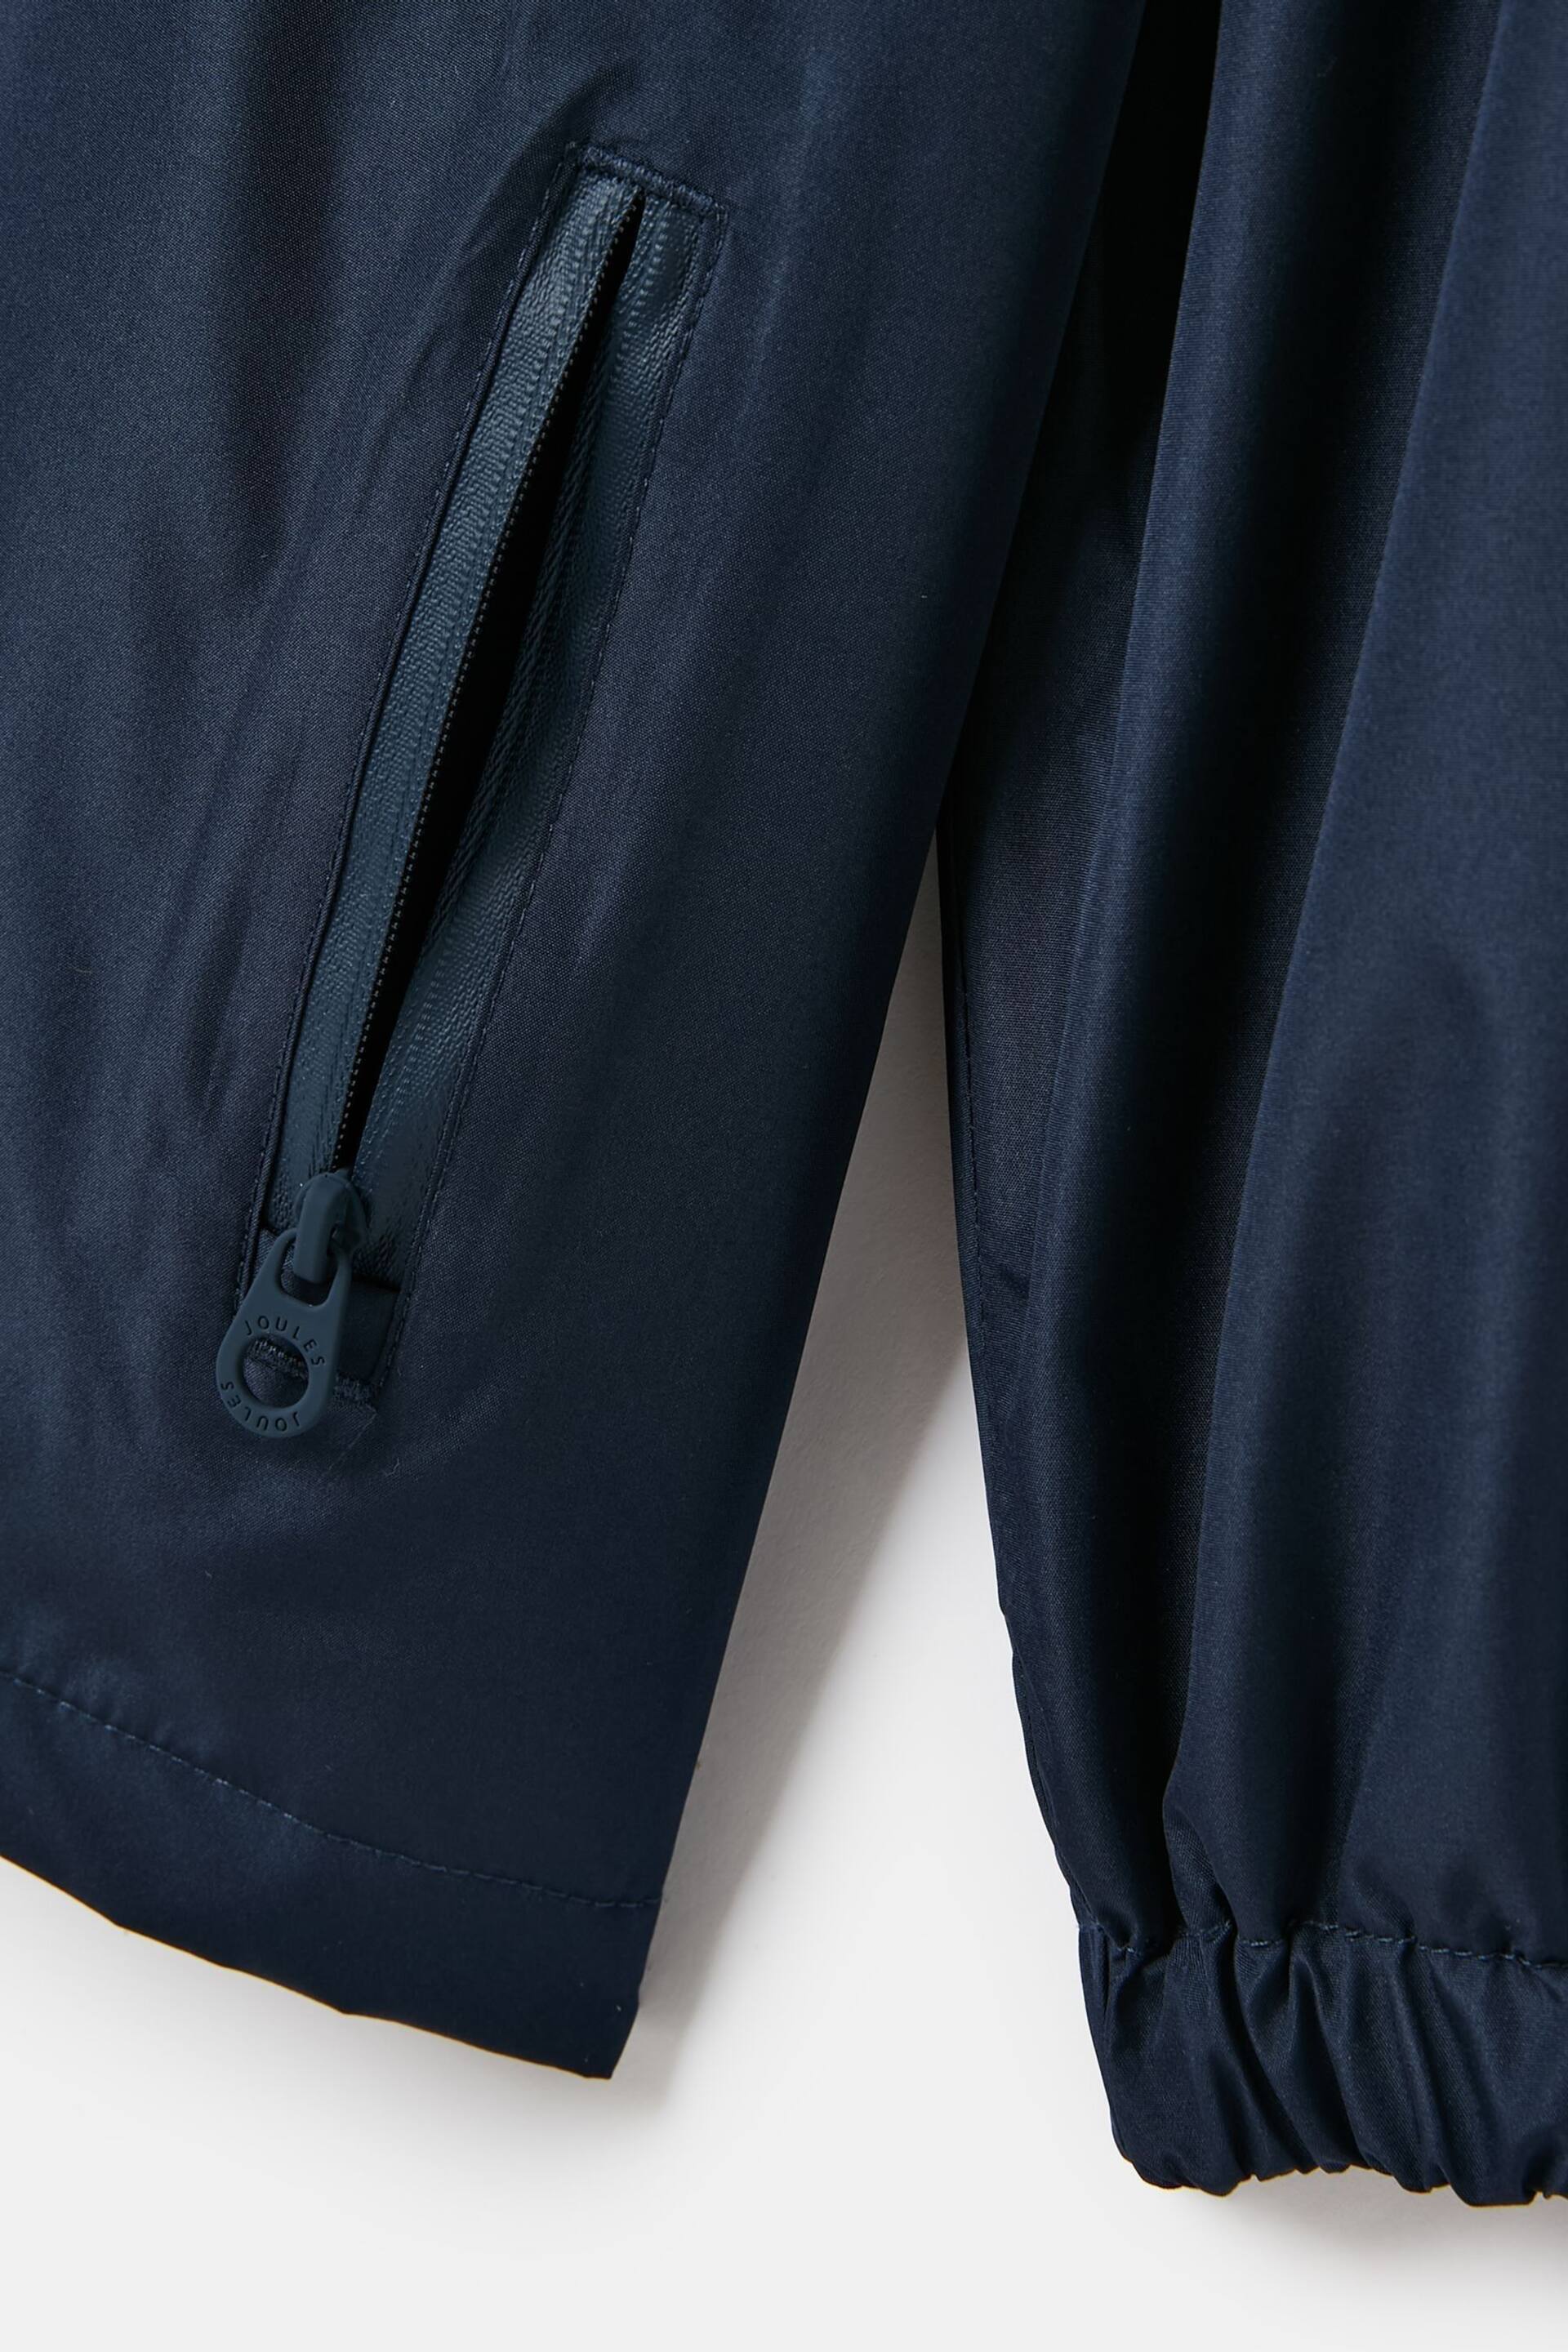 Joules Rainwell Navy Blue Waterproof Packable Raincoat With Hood - Image 5 of 5